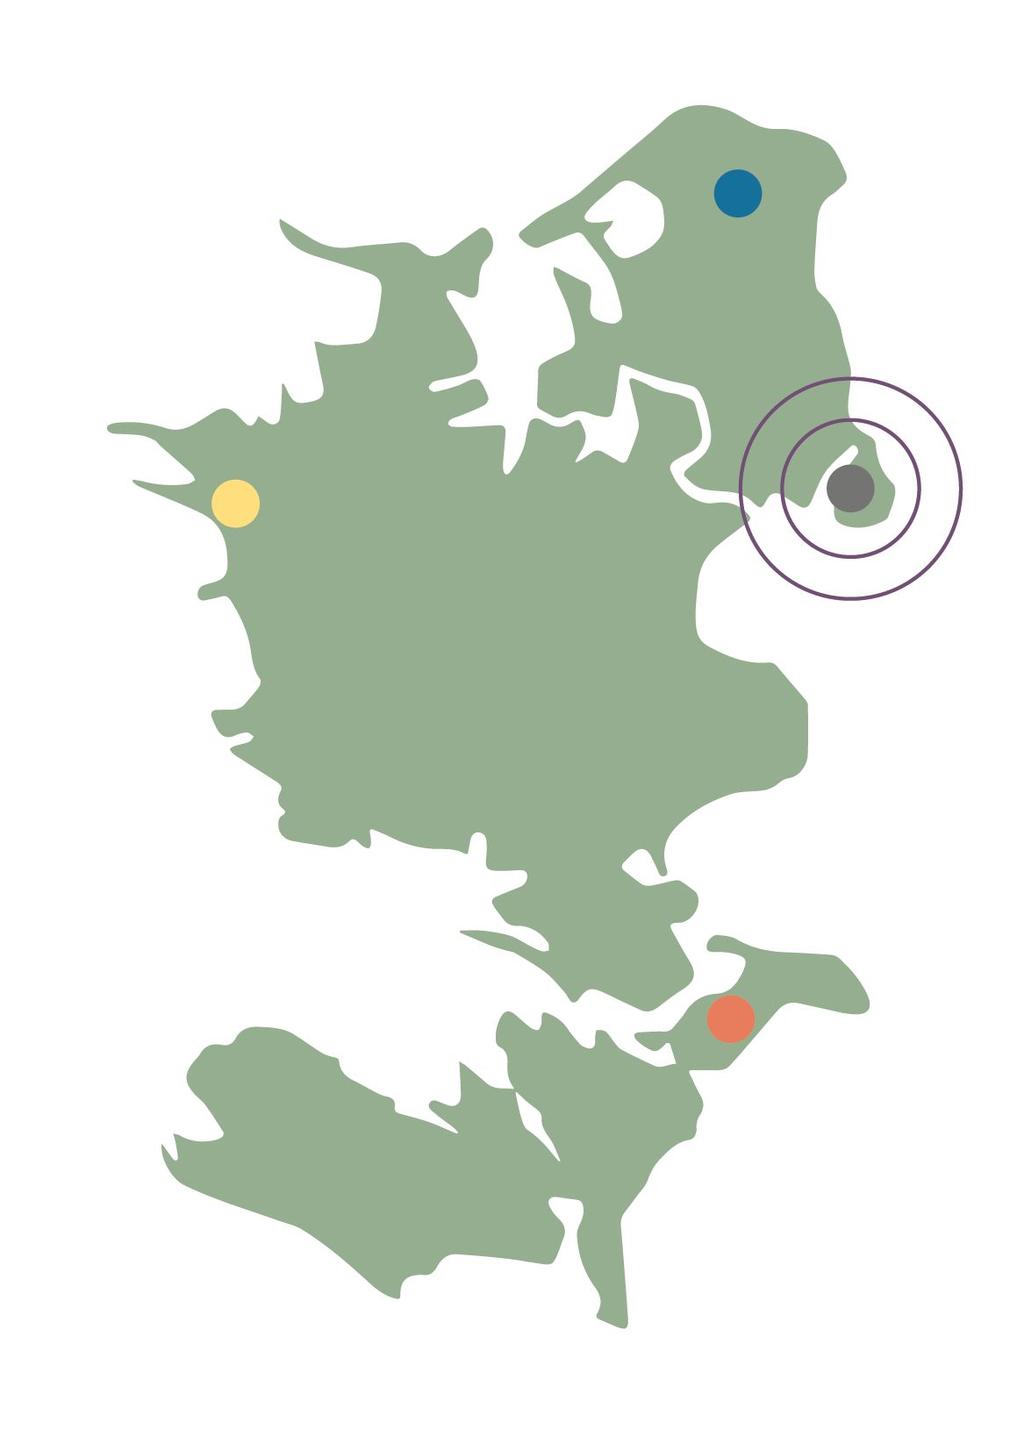 Bilag 2: Det regionale turismelandskab Greater Copenhagen: Med et nyt regionalt samarbejde omkring Greater Copenhagen (Skåne, Hovedstaden og Sjælland) er der taget skridt i retning af et alternativ